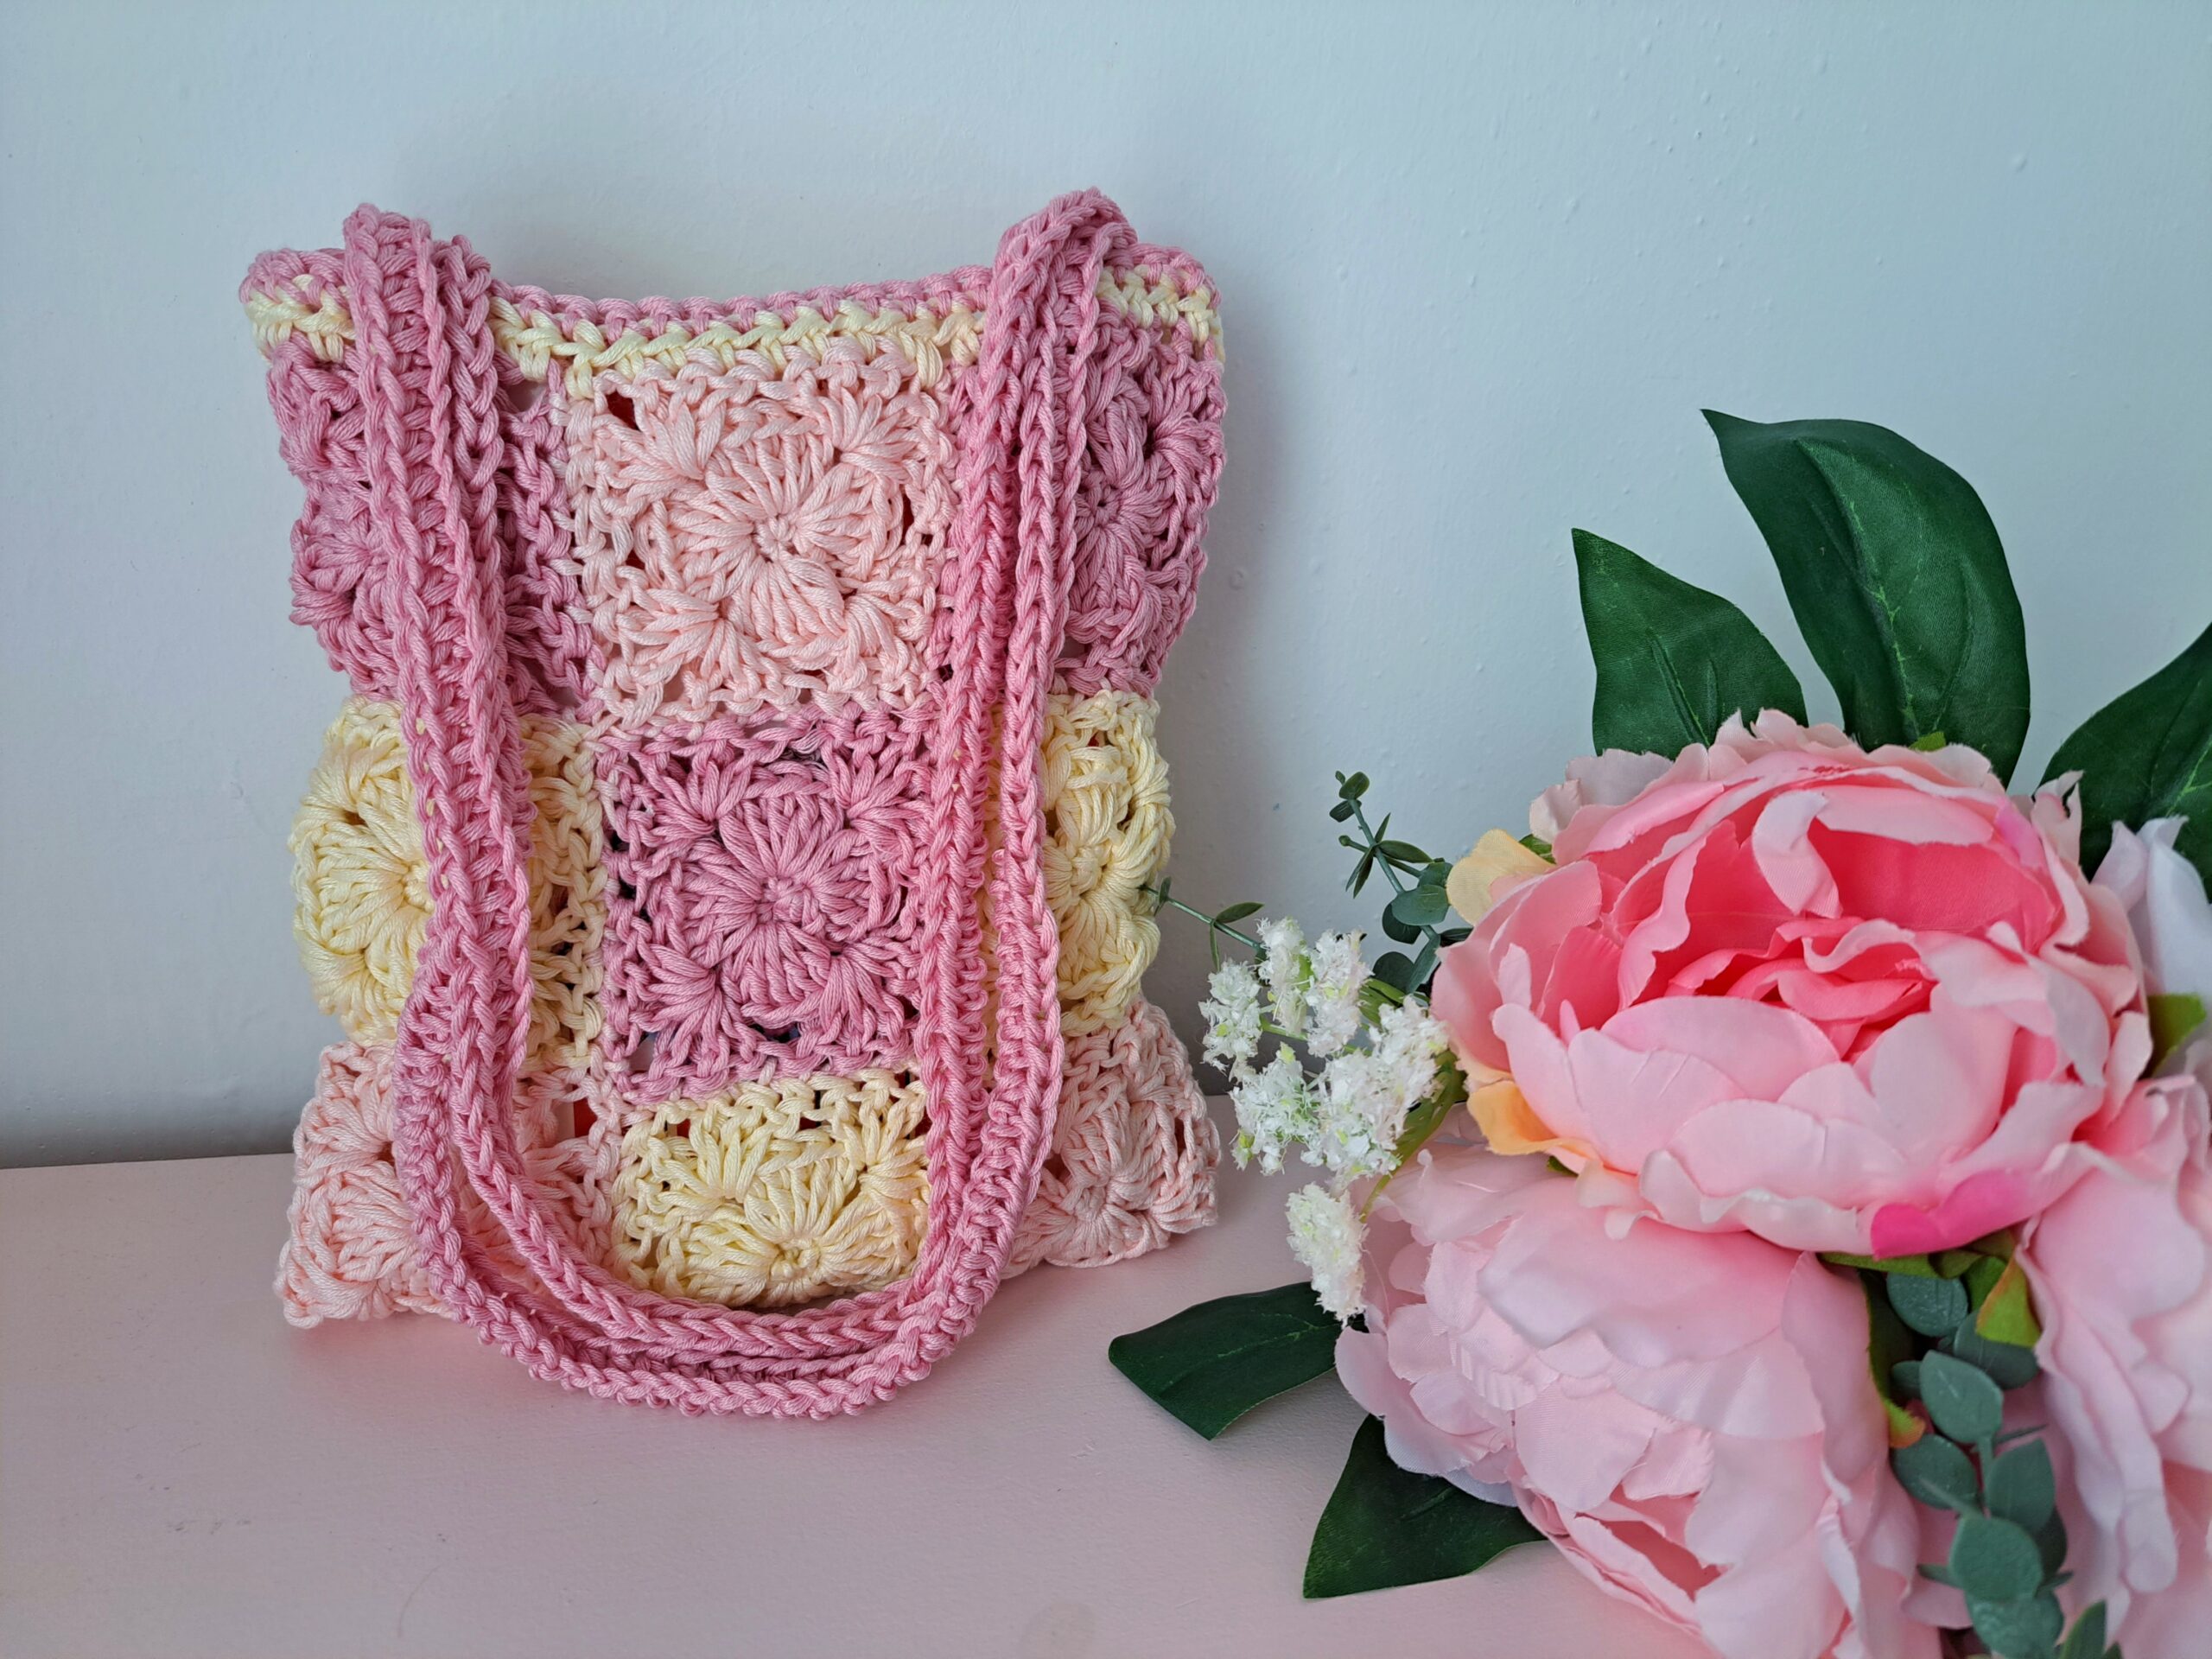 Crochet Lovely Granny Square Bag Free Pattern